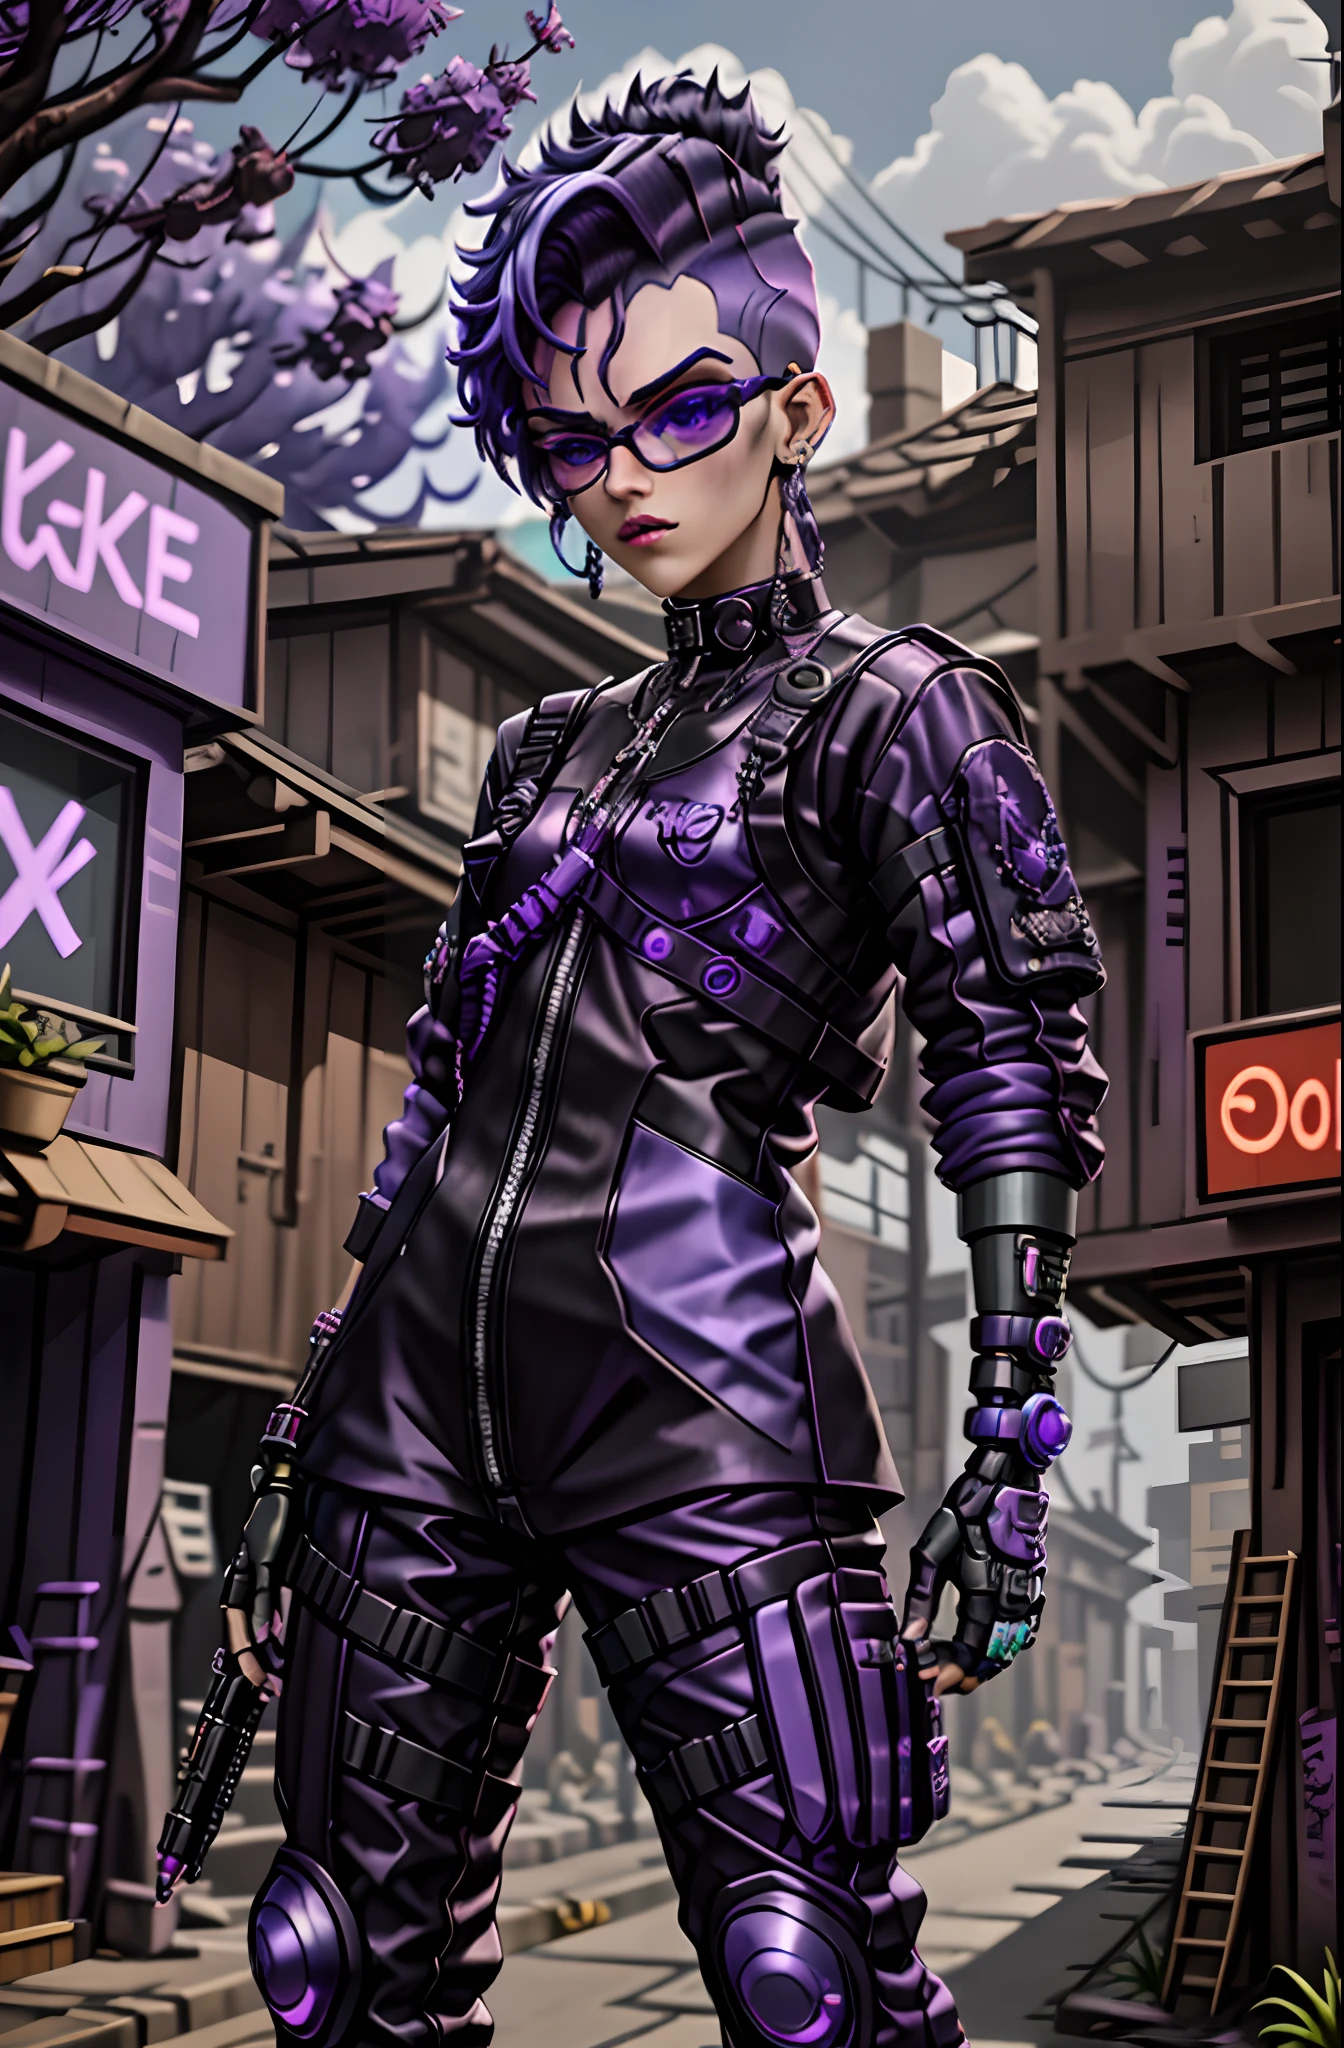 Lilahaarige Frau in lila Outfit und schwarzer Brille vor einem Gebäude, roupa estilo cyberpunk, roupa cyberpunk, Foto einer Techwear-Frau, Kleidung und Rüstung tragen, no estilo cyberpunk,  de anime cyberpunk feminino, alta moda cyberpunk, roupas cyberpunk, cyberpunk zangada deusa linda, cyberpunk vestindo, tem estilo cyberpunk, em cyberpunk city, hyperrealistischer Cyberpunk-Stil